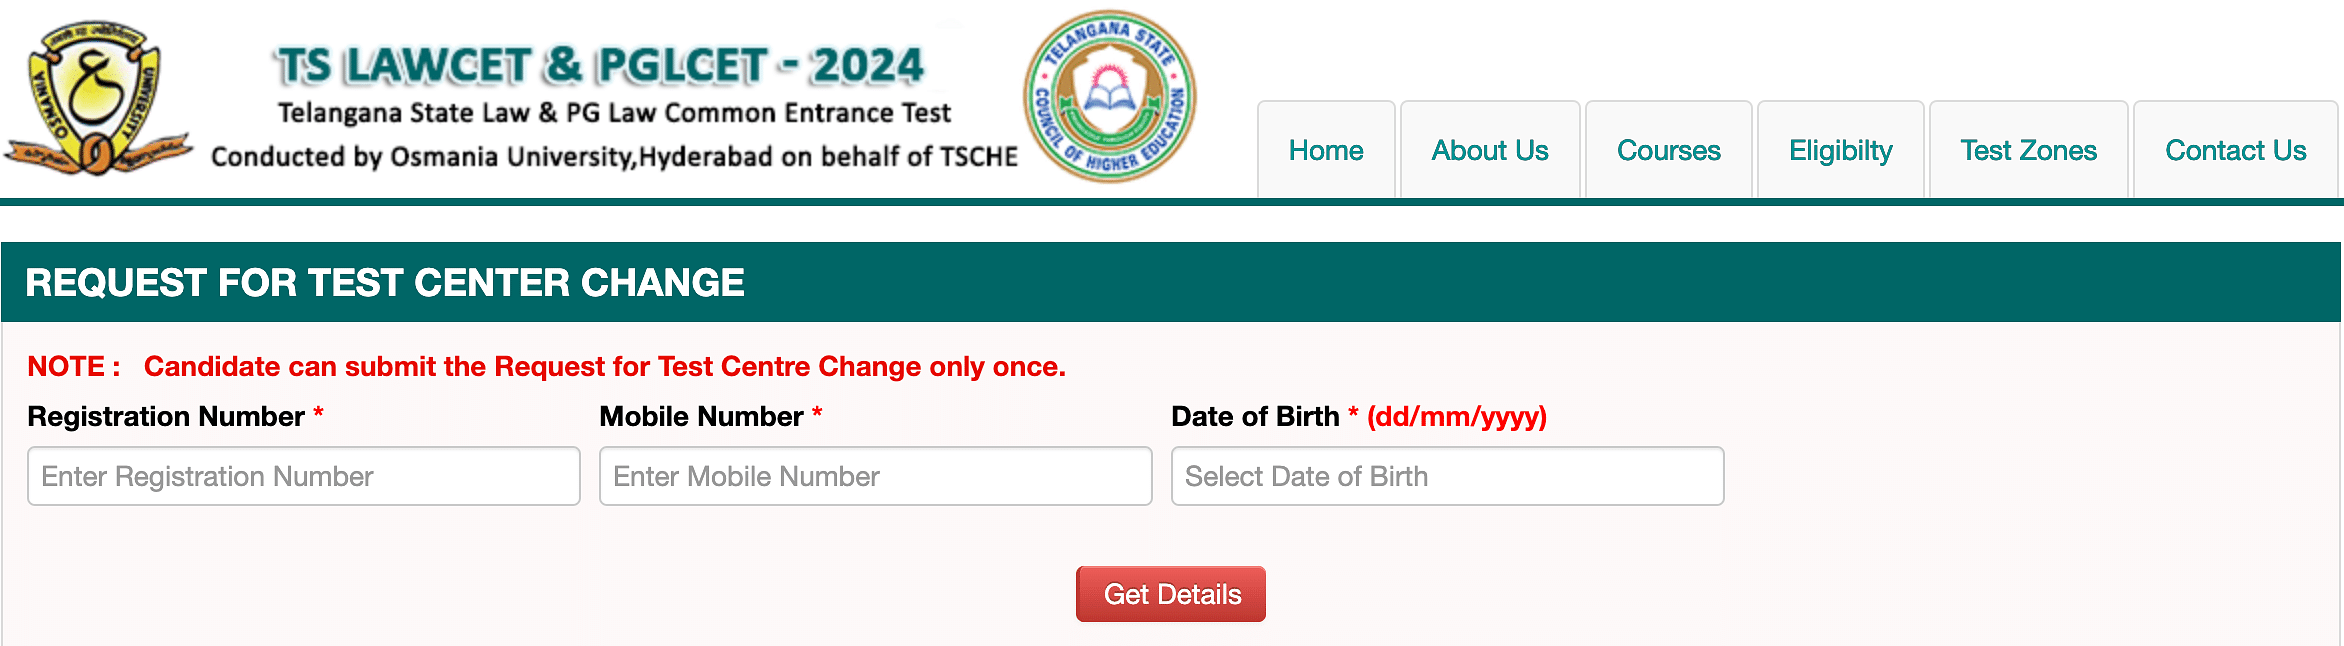 TS LAWCET 2024 Exam Centre Change Request